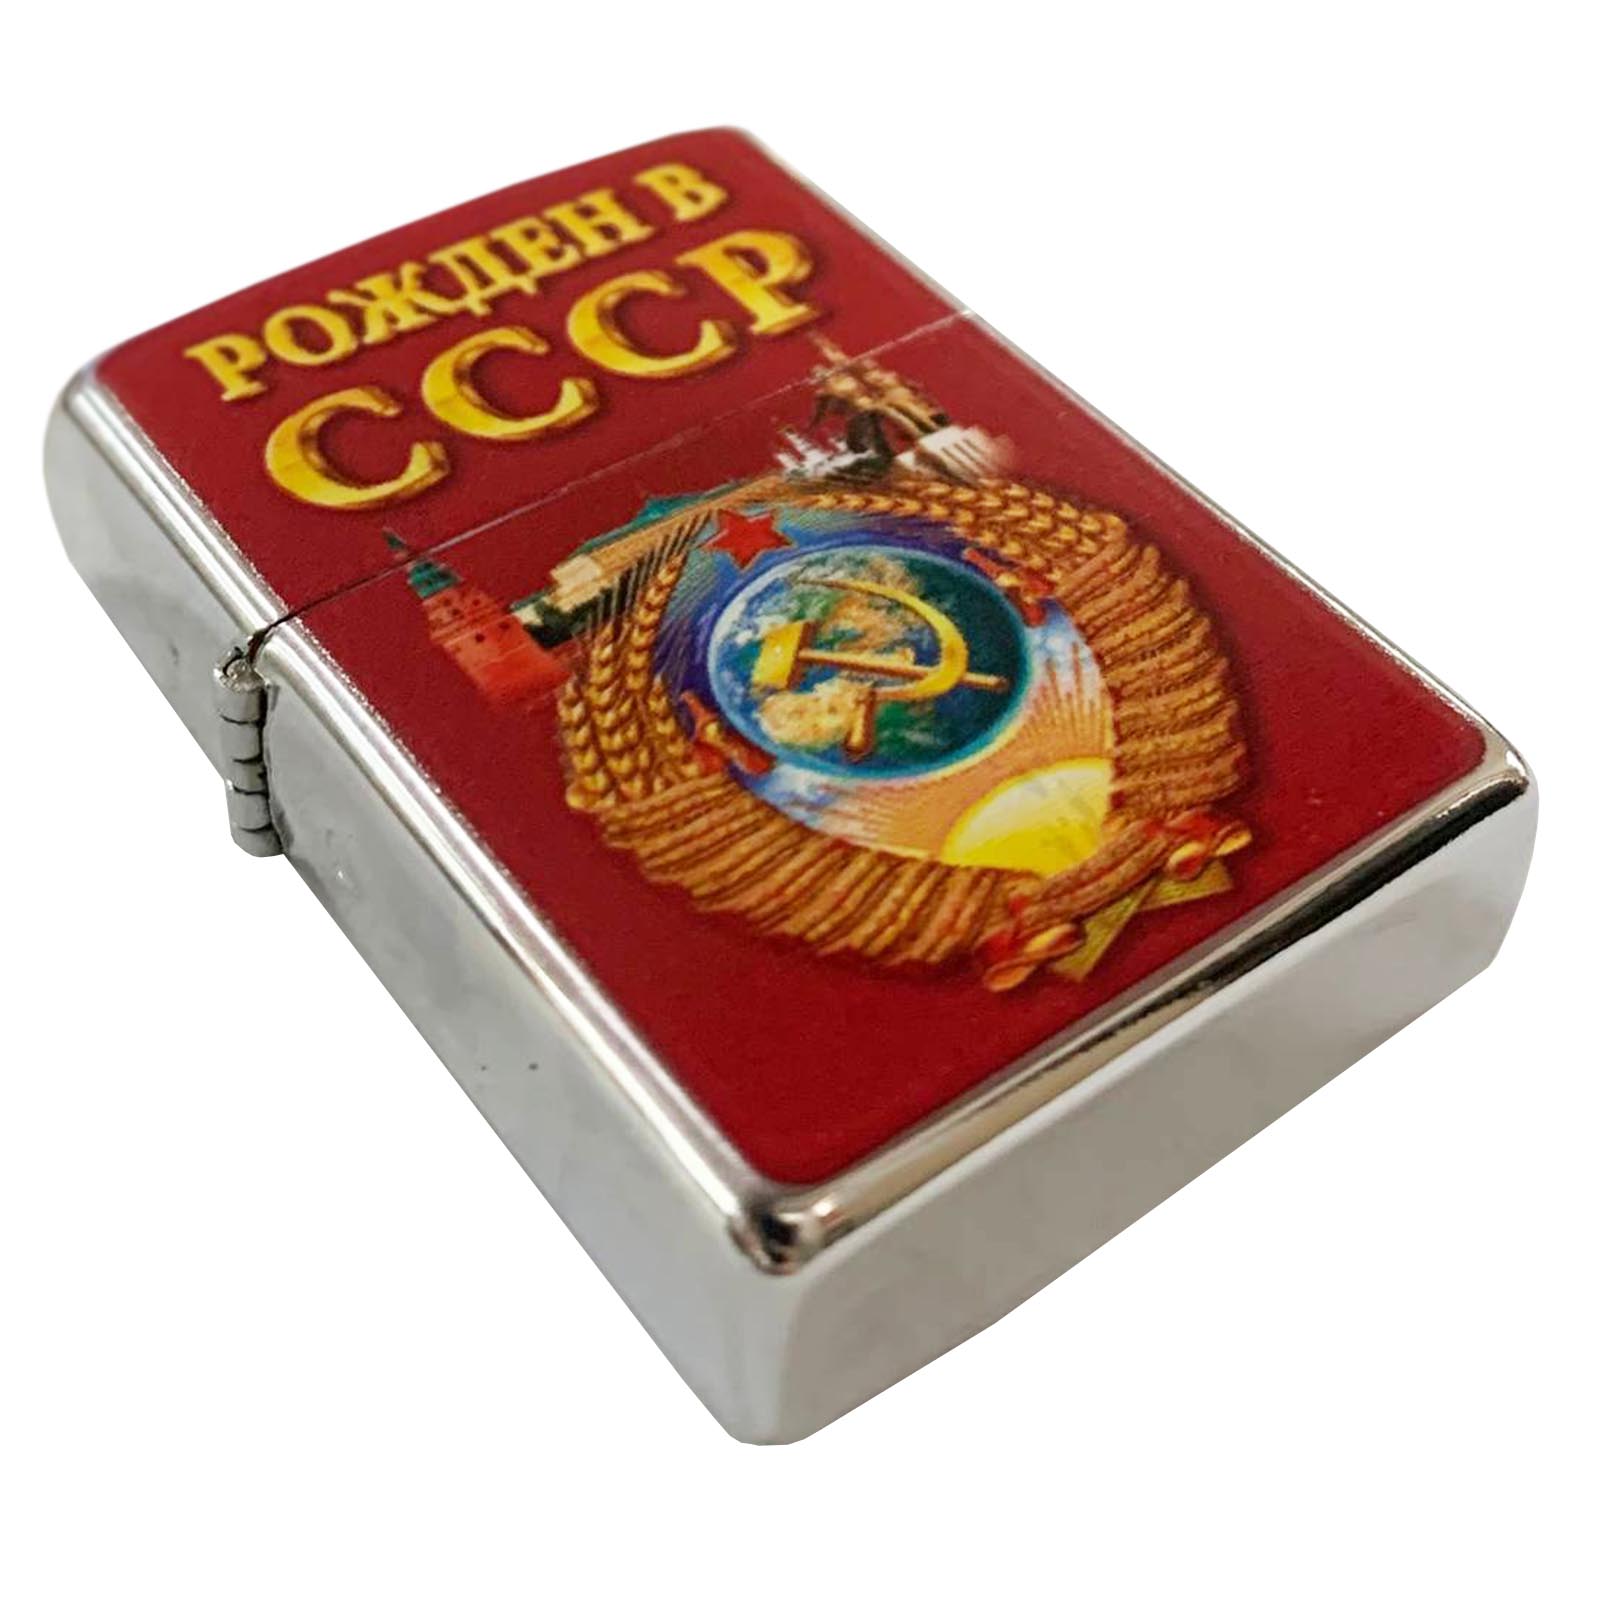 Бензиновая зажигалка Рожден в СССР - купить онлайн